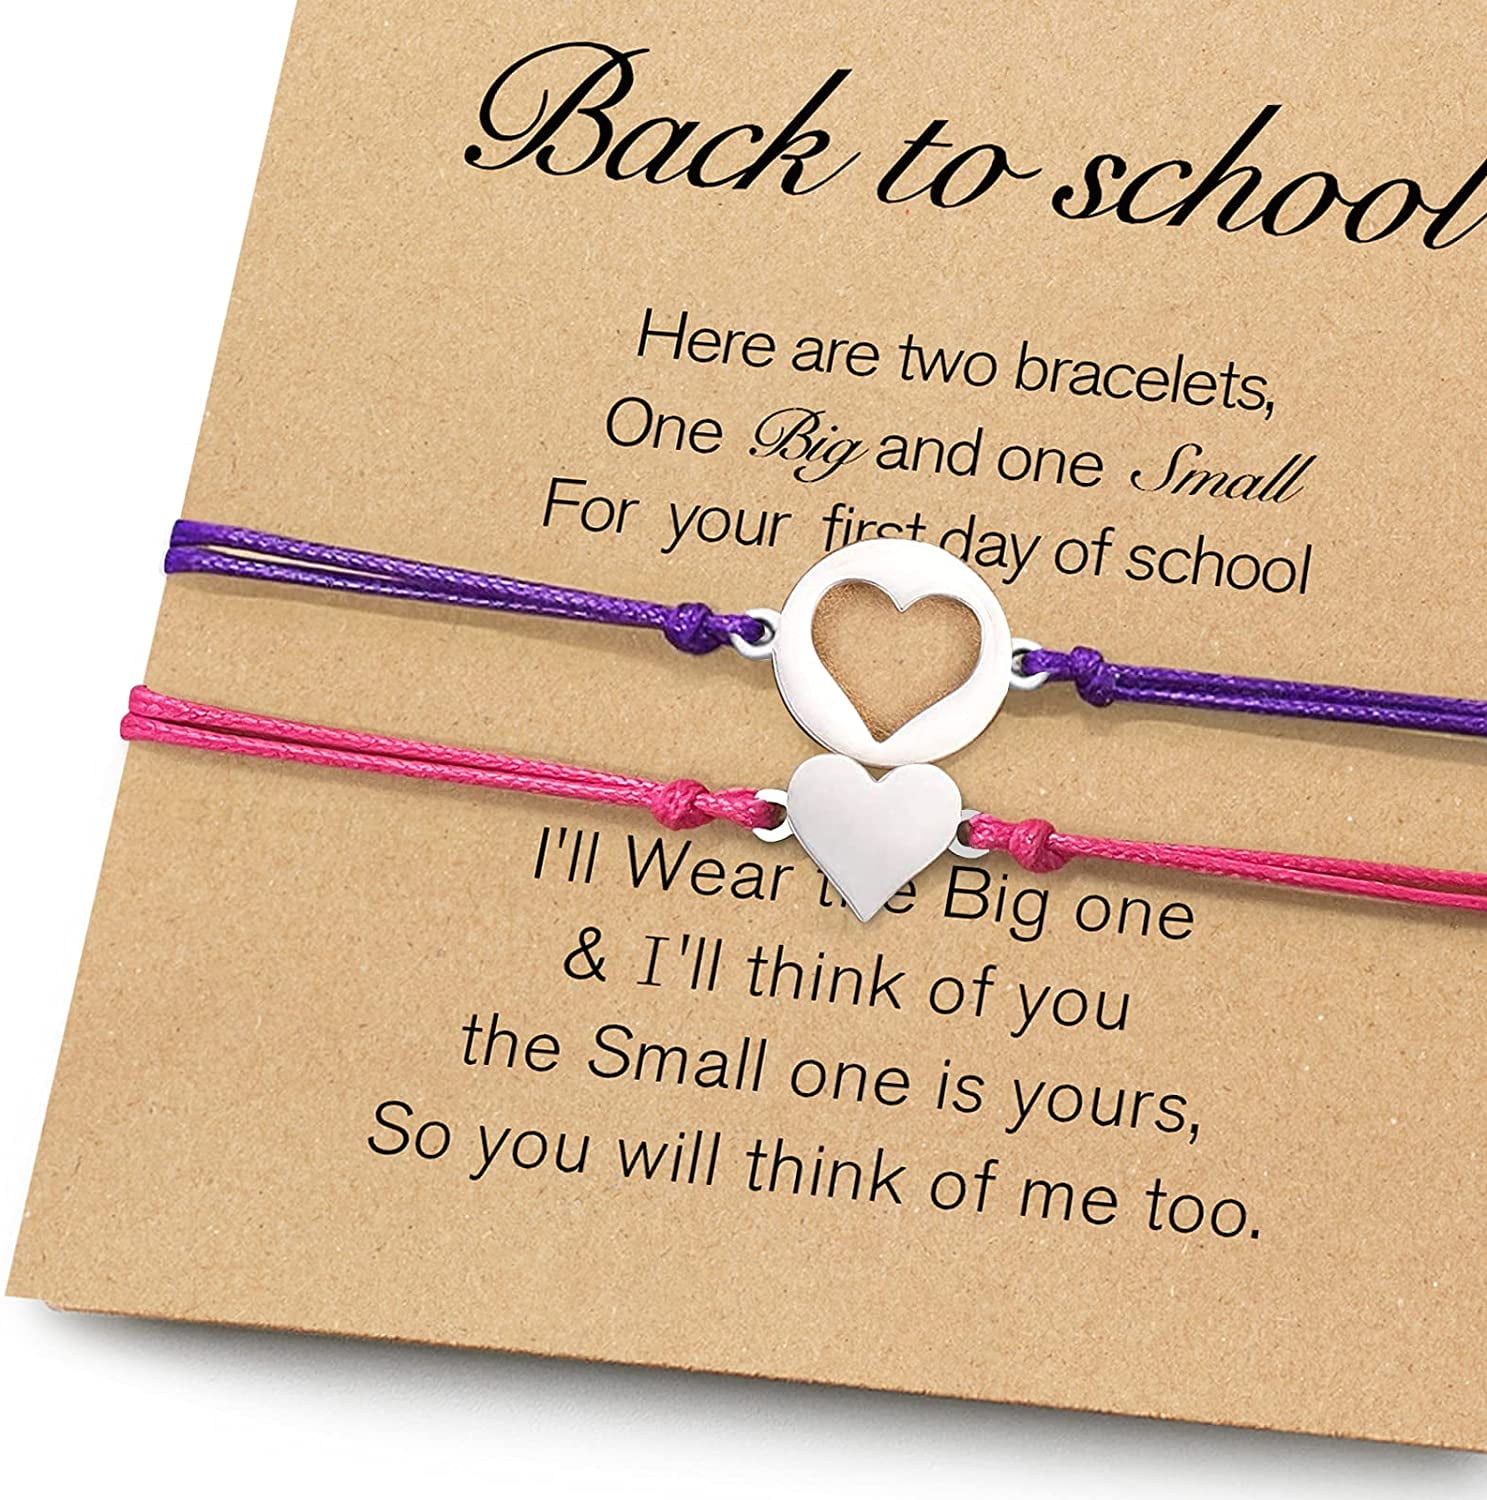 Introducing the new CLASS BRACELET! | Bracelets, Jewelry, Graduation jewelry